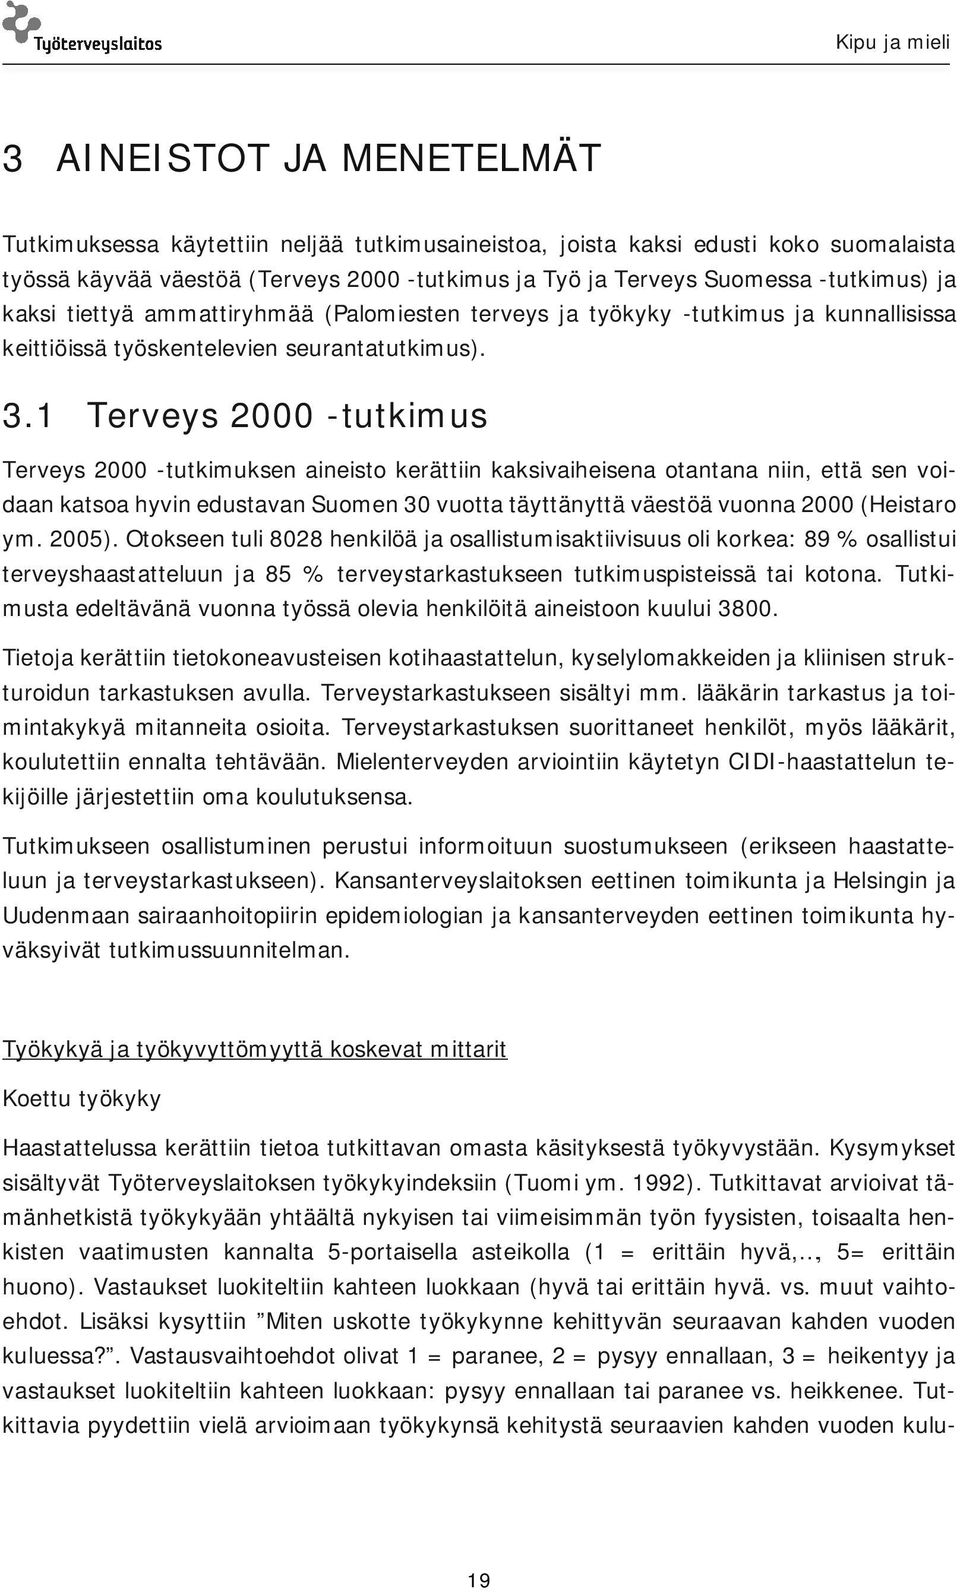 1 Terveys 2000 -tutkimus Terveys 2000 -tutkimuksen aineisto kerättiin kaksivaiheisena otantana niin, että sen voidaan katsoa hyvin edustavan Suomen 30 vuotta täyttänyttä väestöä vuonna 2000 (Heistaro